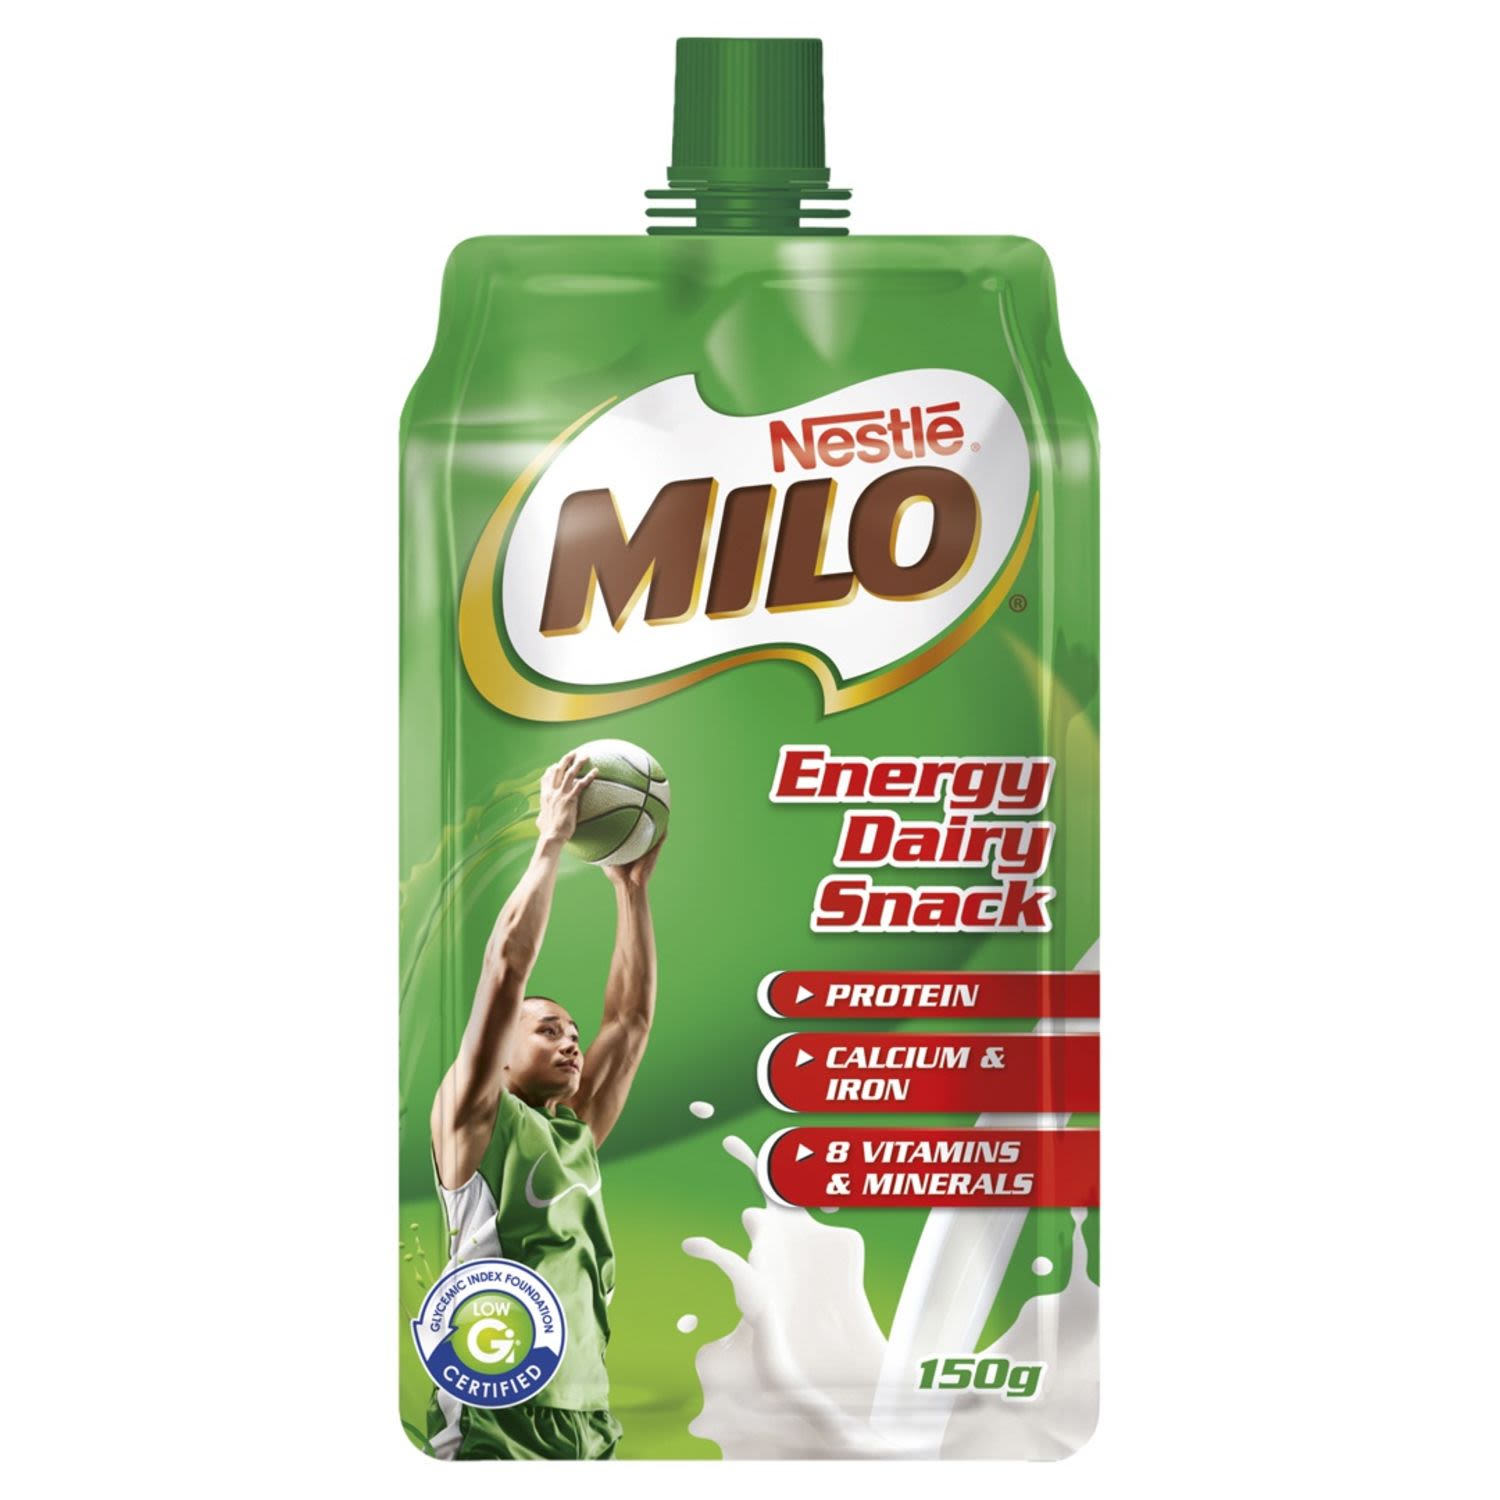 Nestlé Milo Energy Dairy Snack, 150 Gram